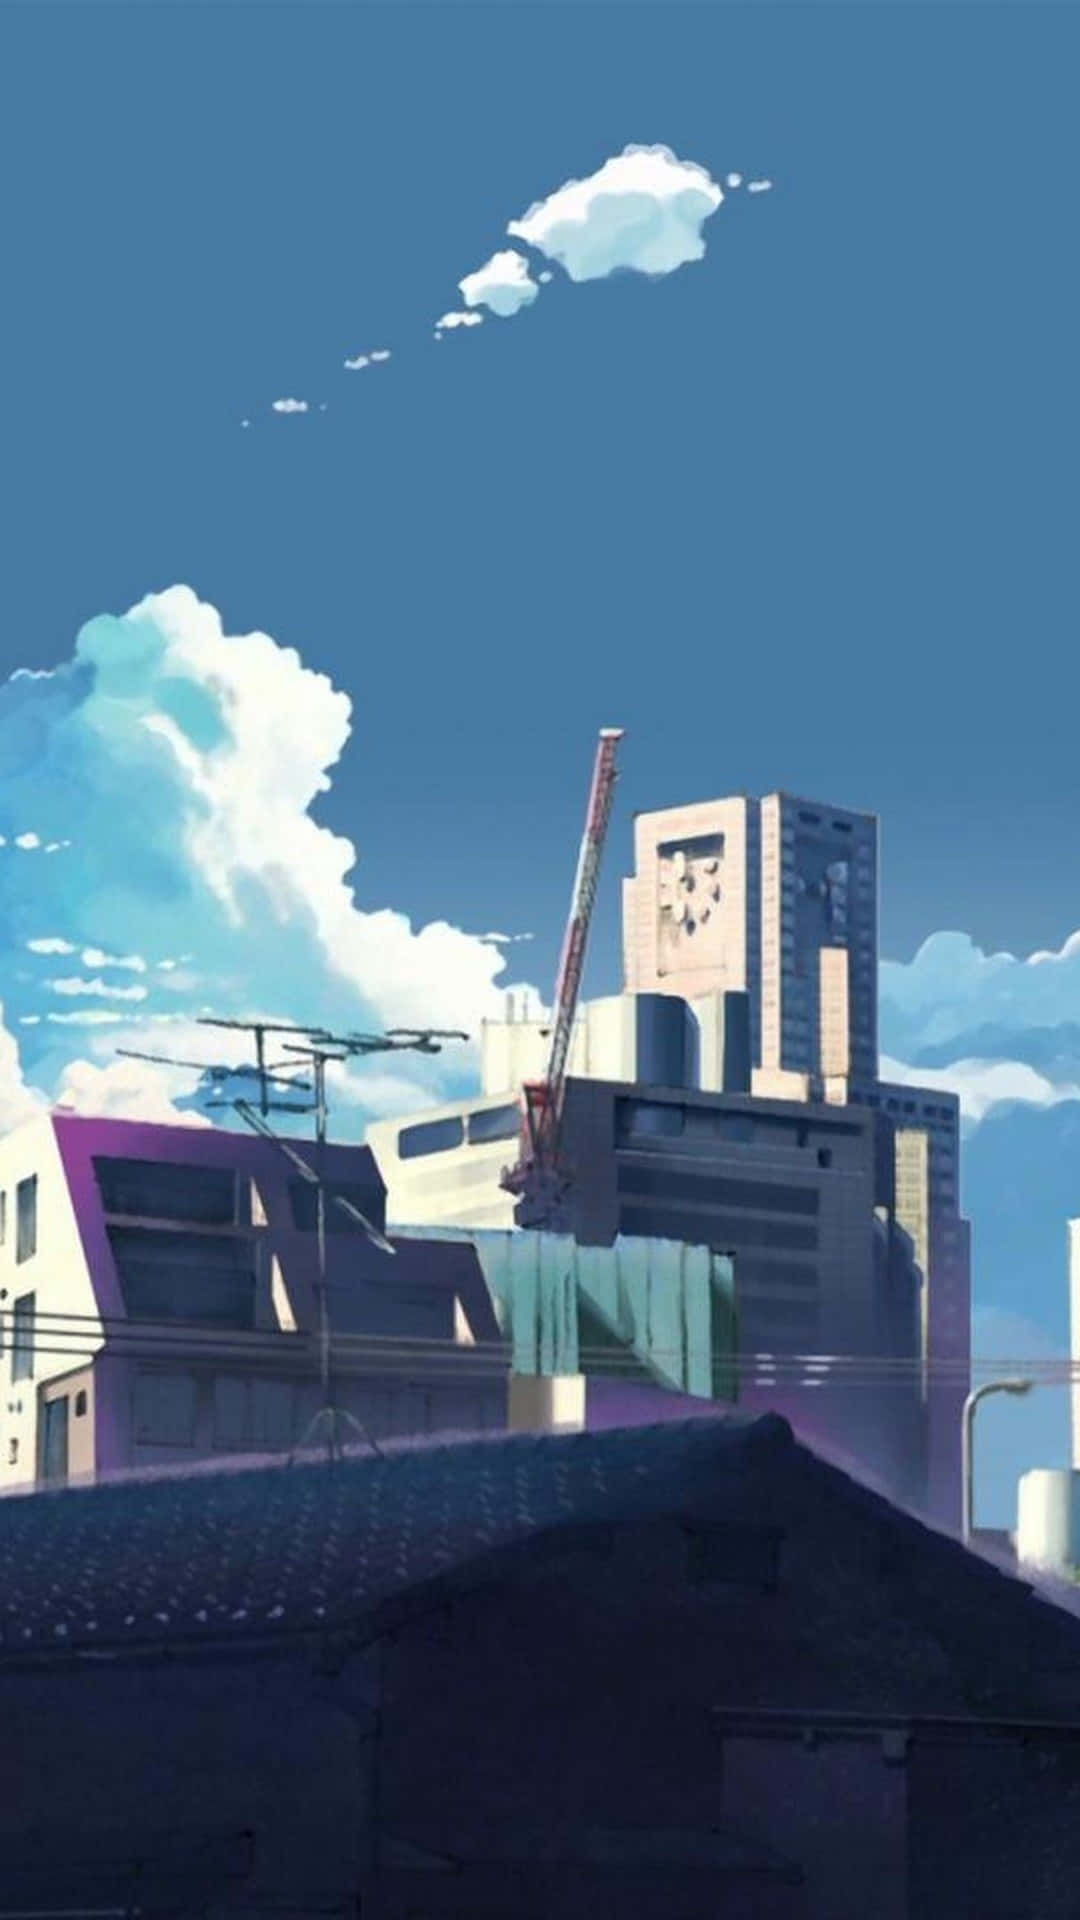 Anime Bygning 5 Centimeter i Sekundet Wallpaper